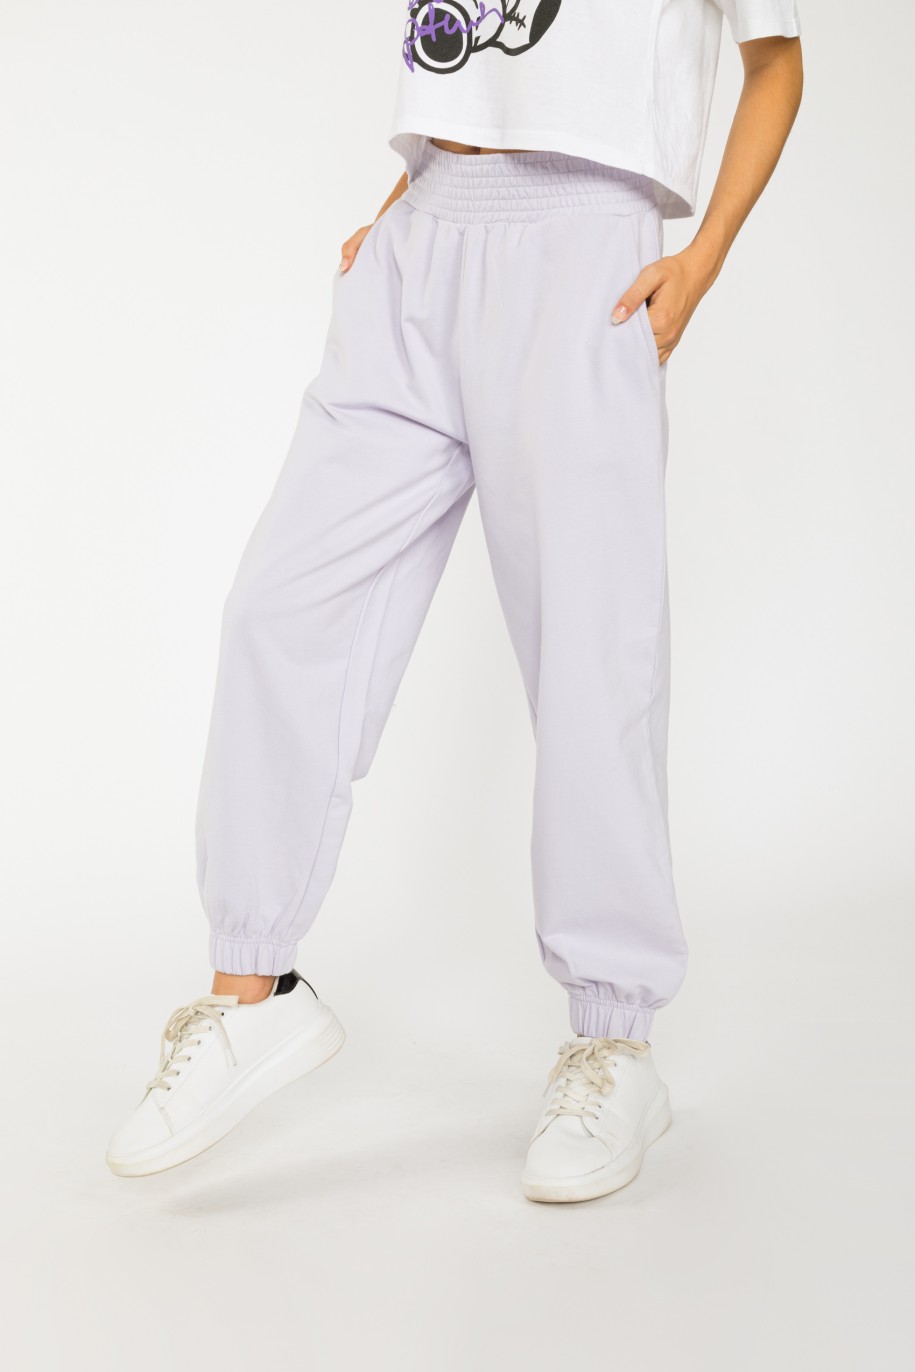 Liliowe pastelowe spodnie dresowe ze ściągaczem - 36409